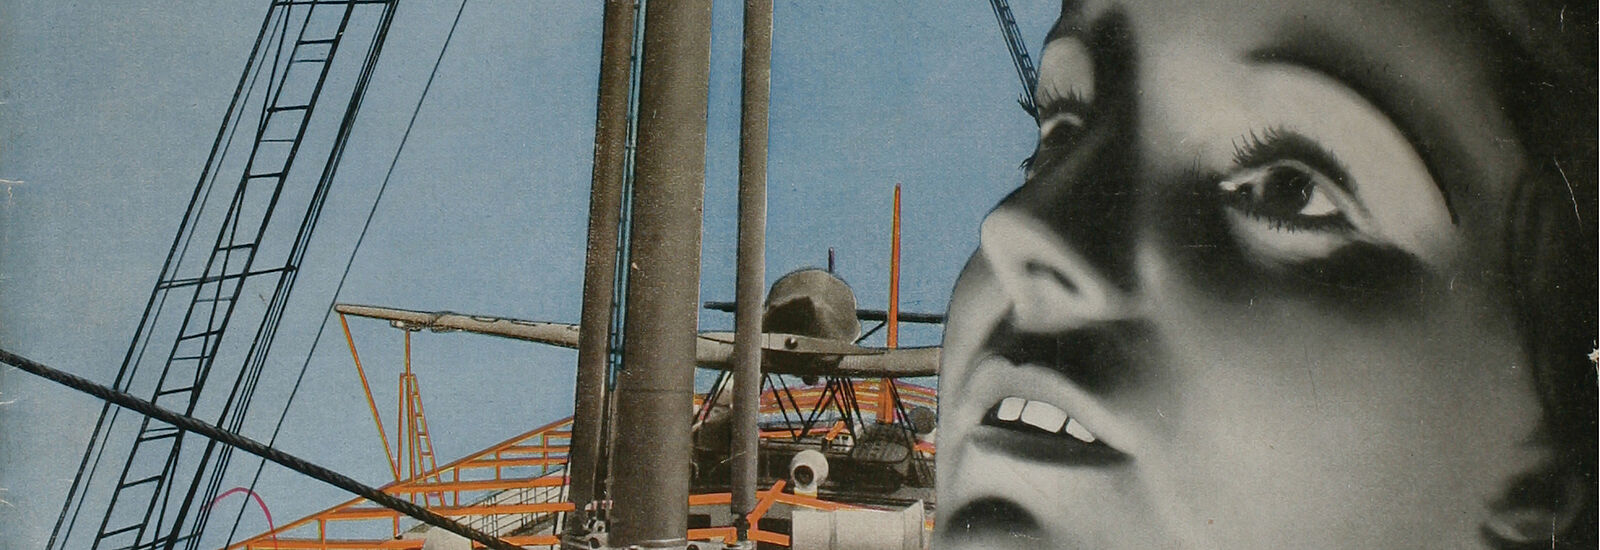 László Moholy-Nagy, Umschlag für die Zeitschrift "die neue linie"